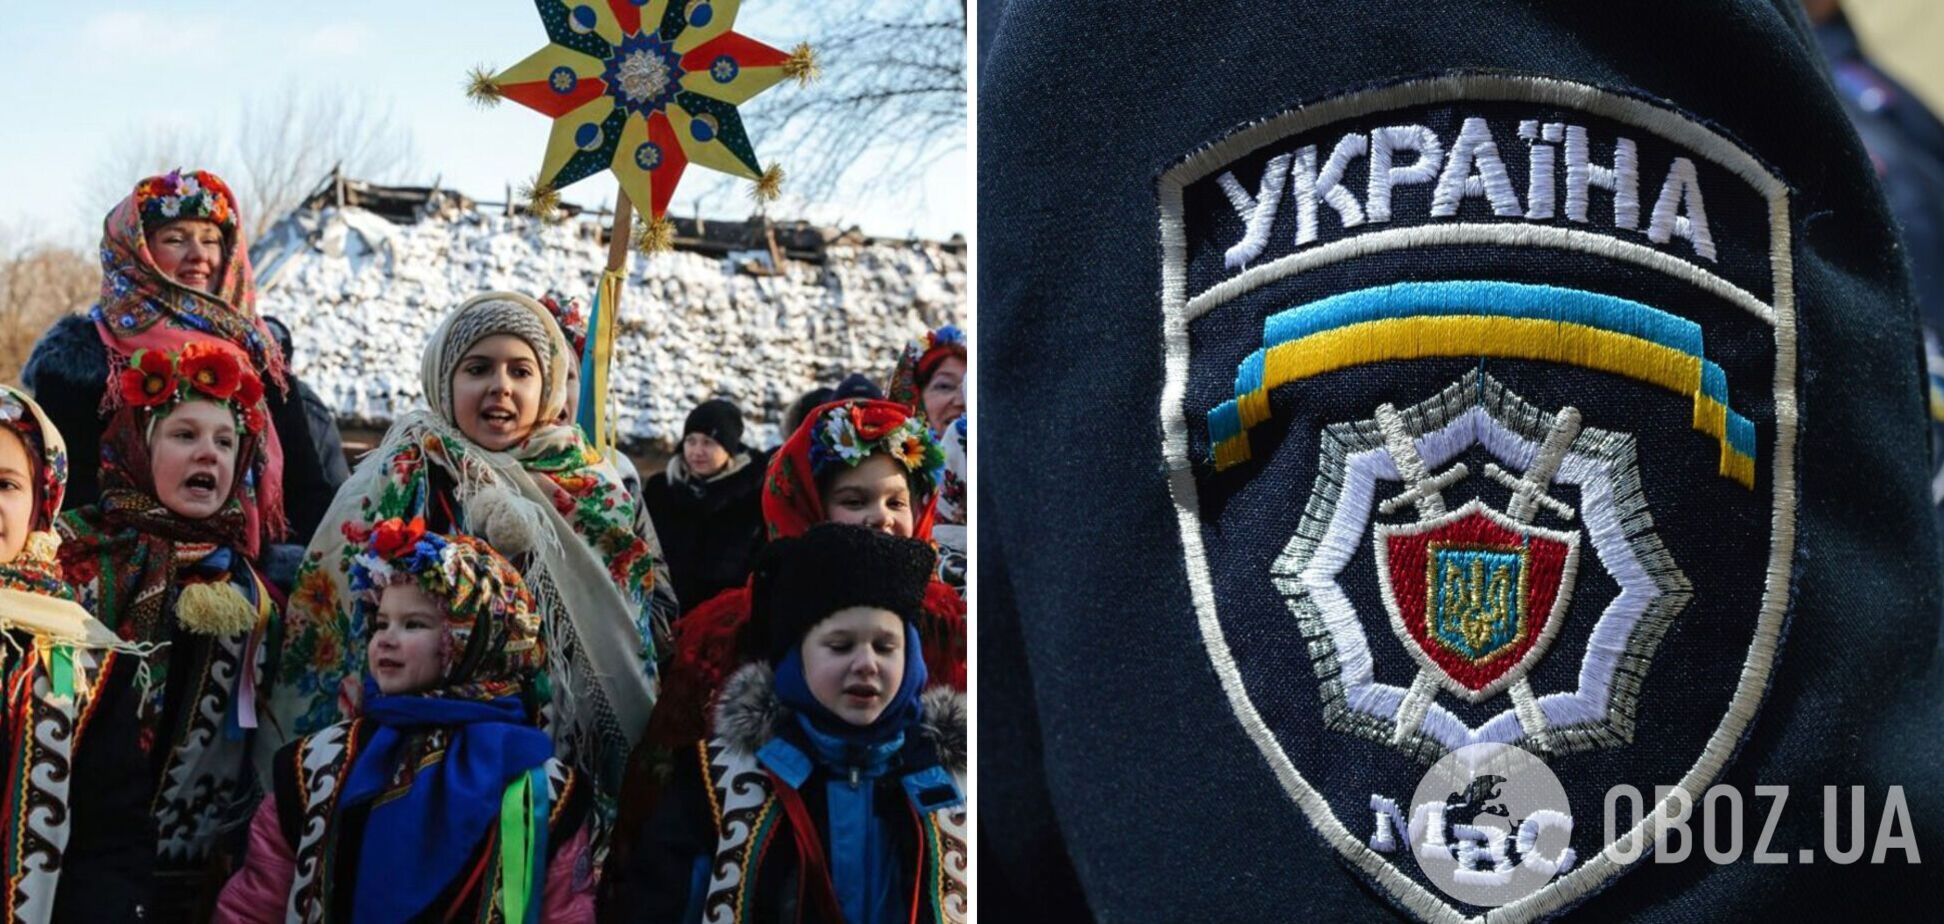 В Одессе дети заколядовали в центре МВД, чтобы помочь однокласснику. Детали истории и видео